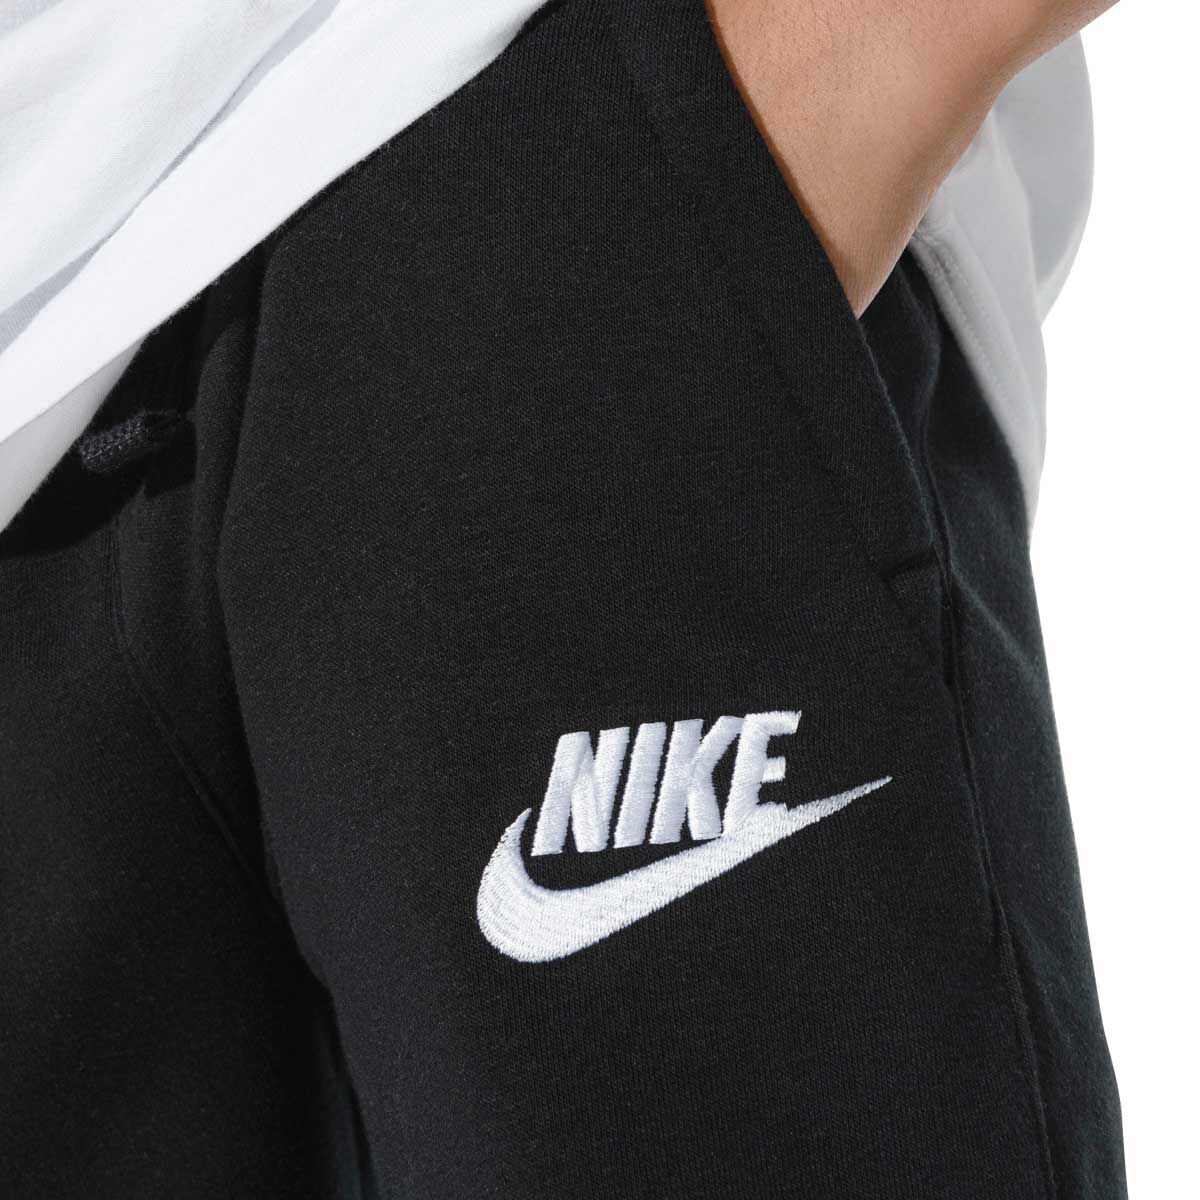 Boys' Sportswear Club Fleece Jogger from Nike